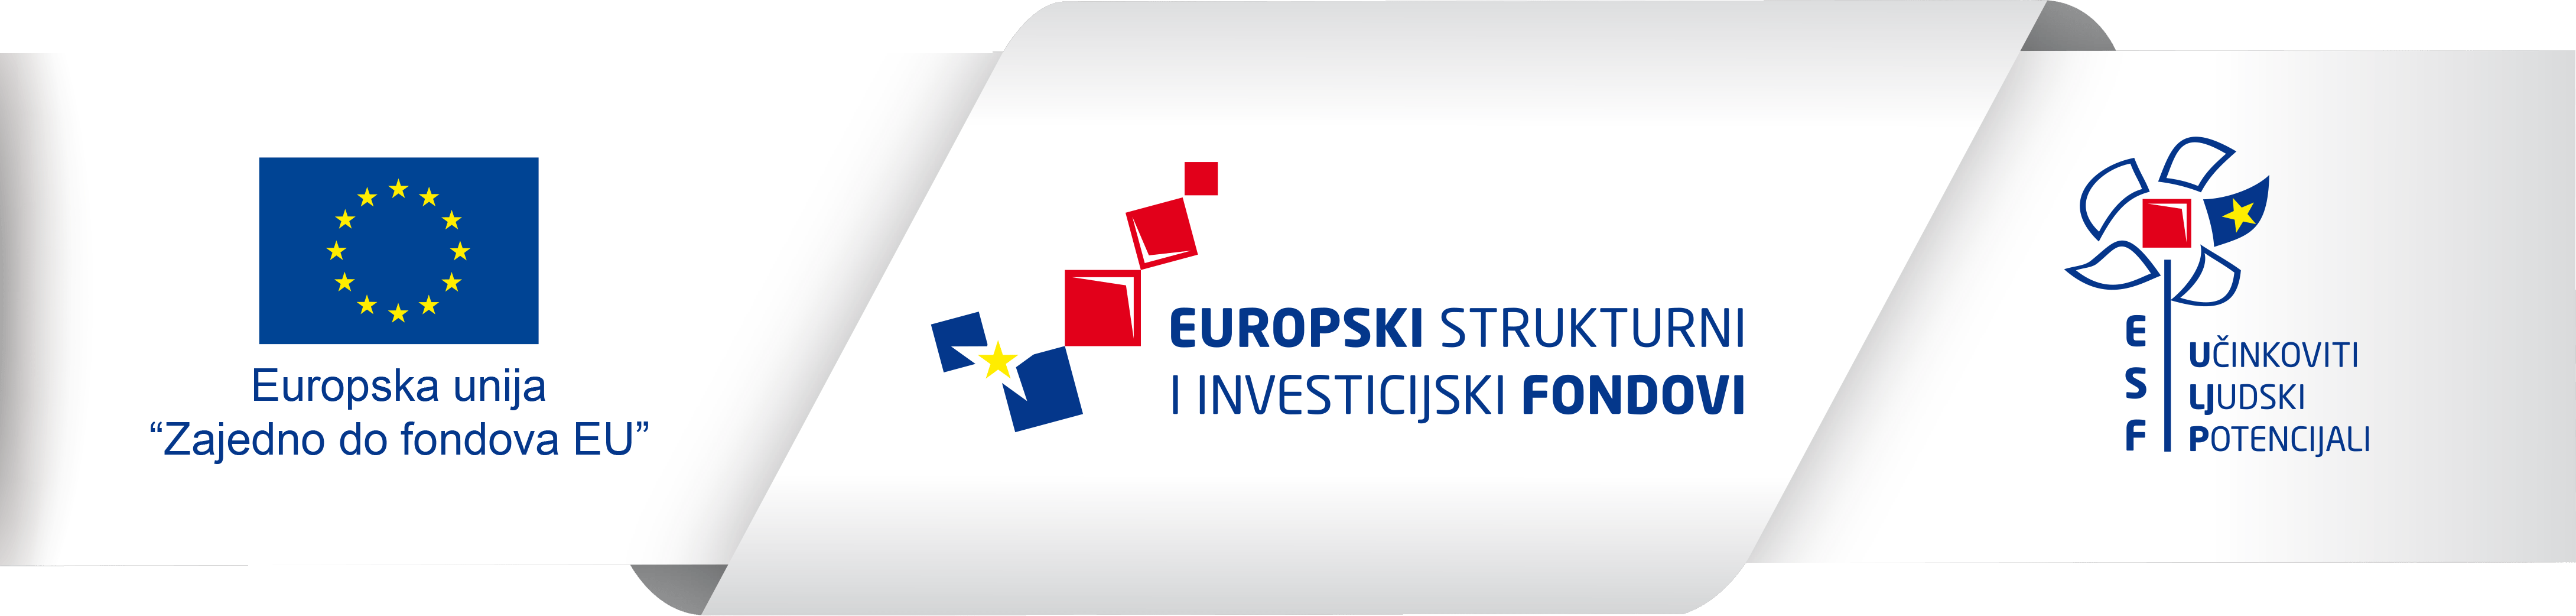 europski-strukturni-investicijski-fondovi